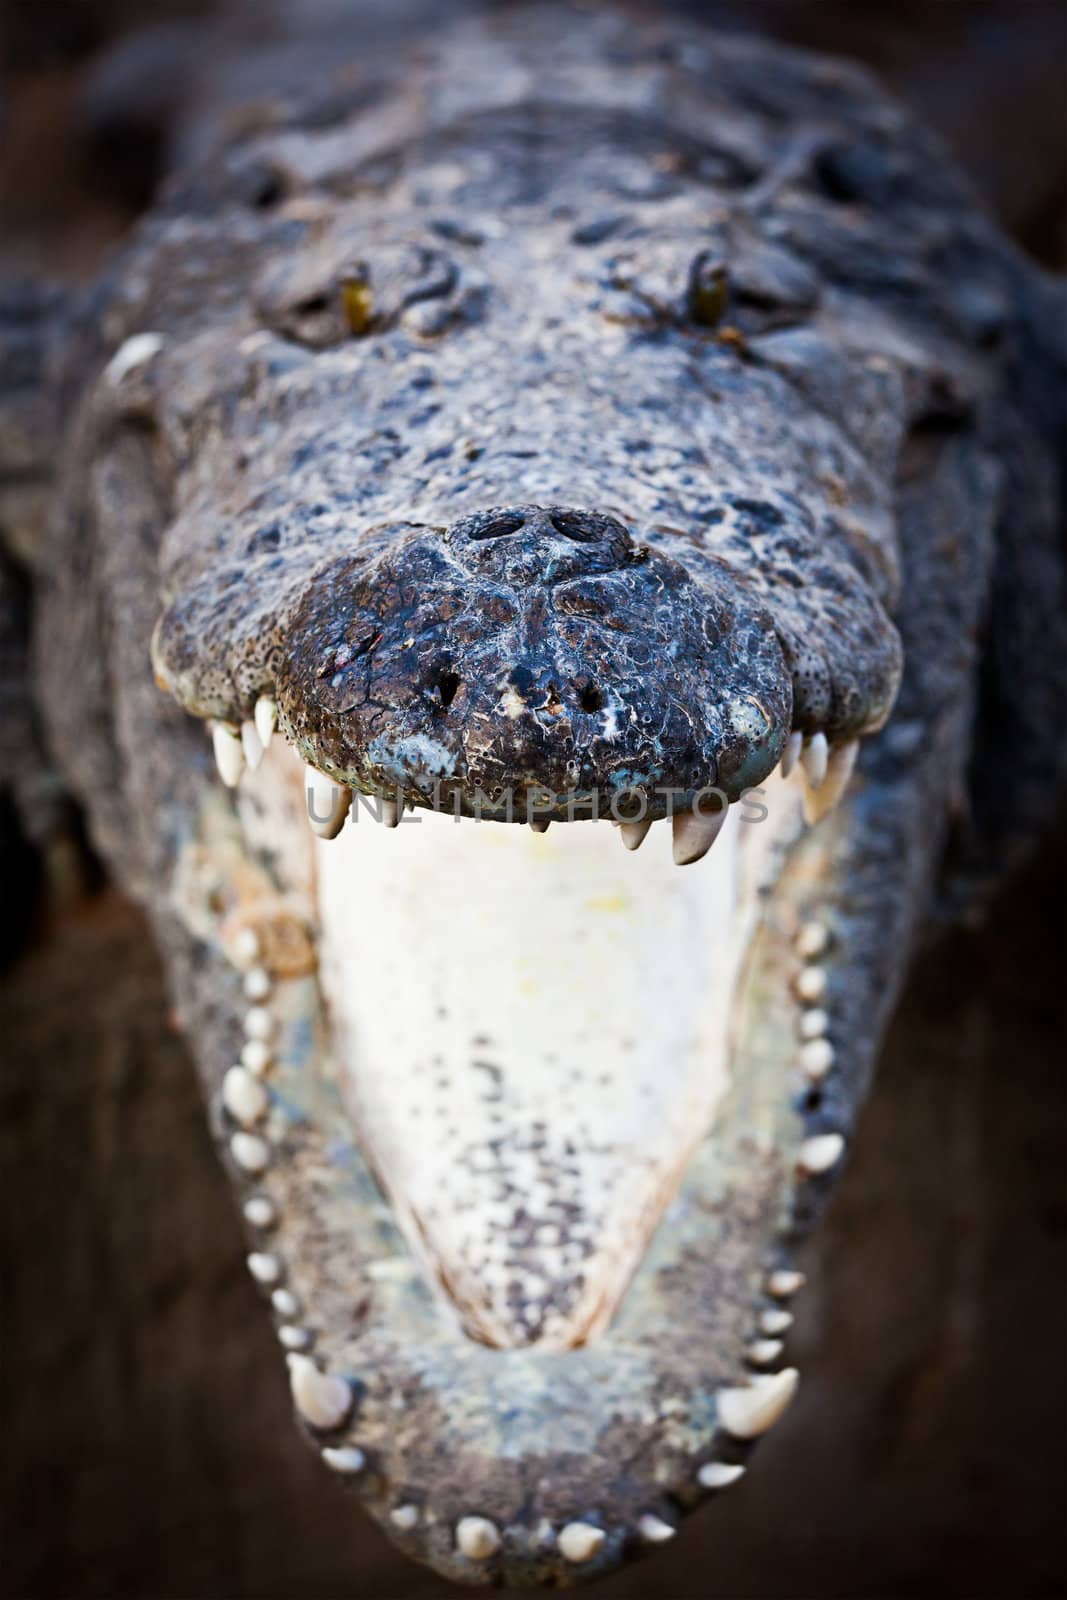 Charging crocodile jaws by dimol